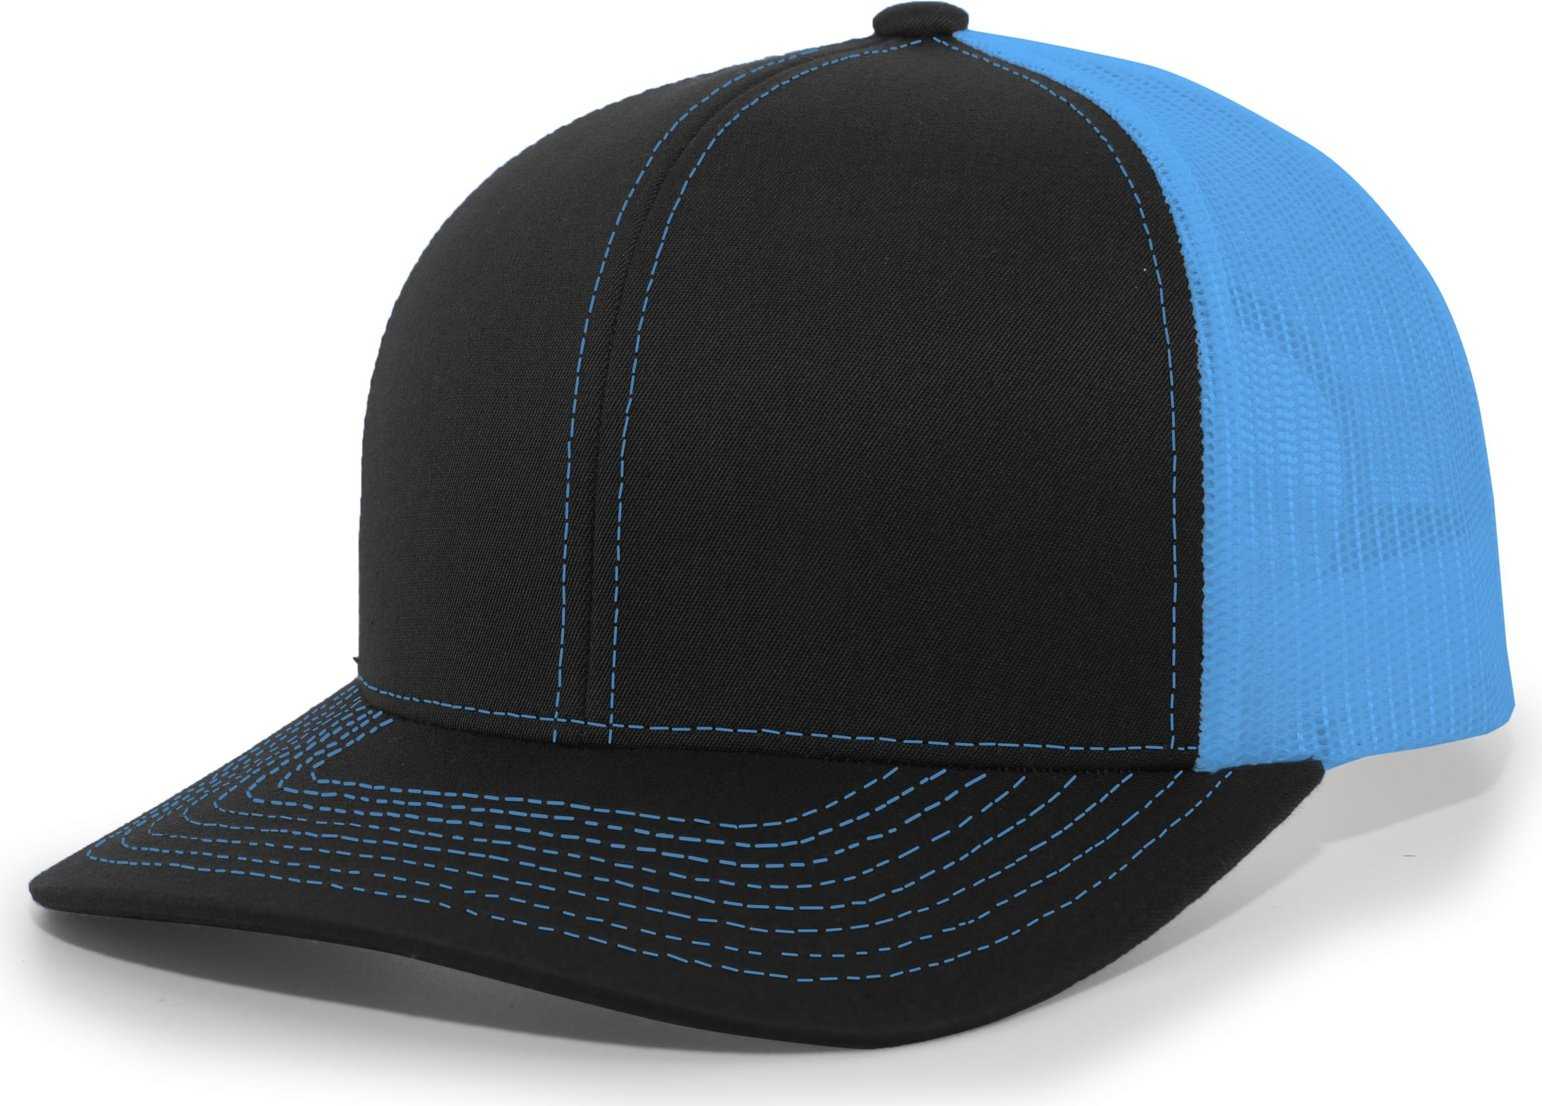 Pacific Headwear 104C Trucker Snapback Cap - Black Neon Blue - HIT a Double